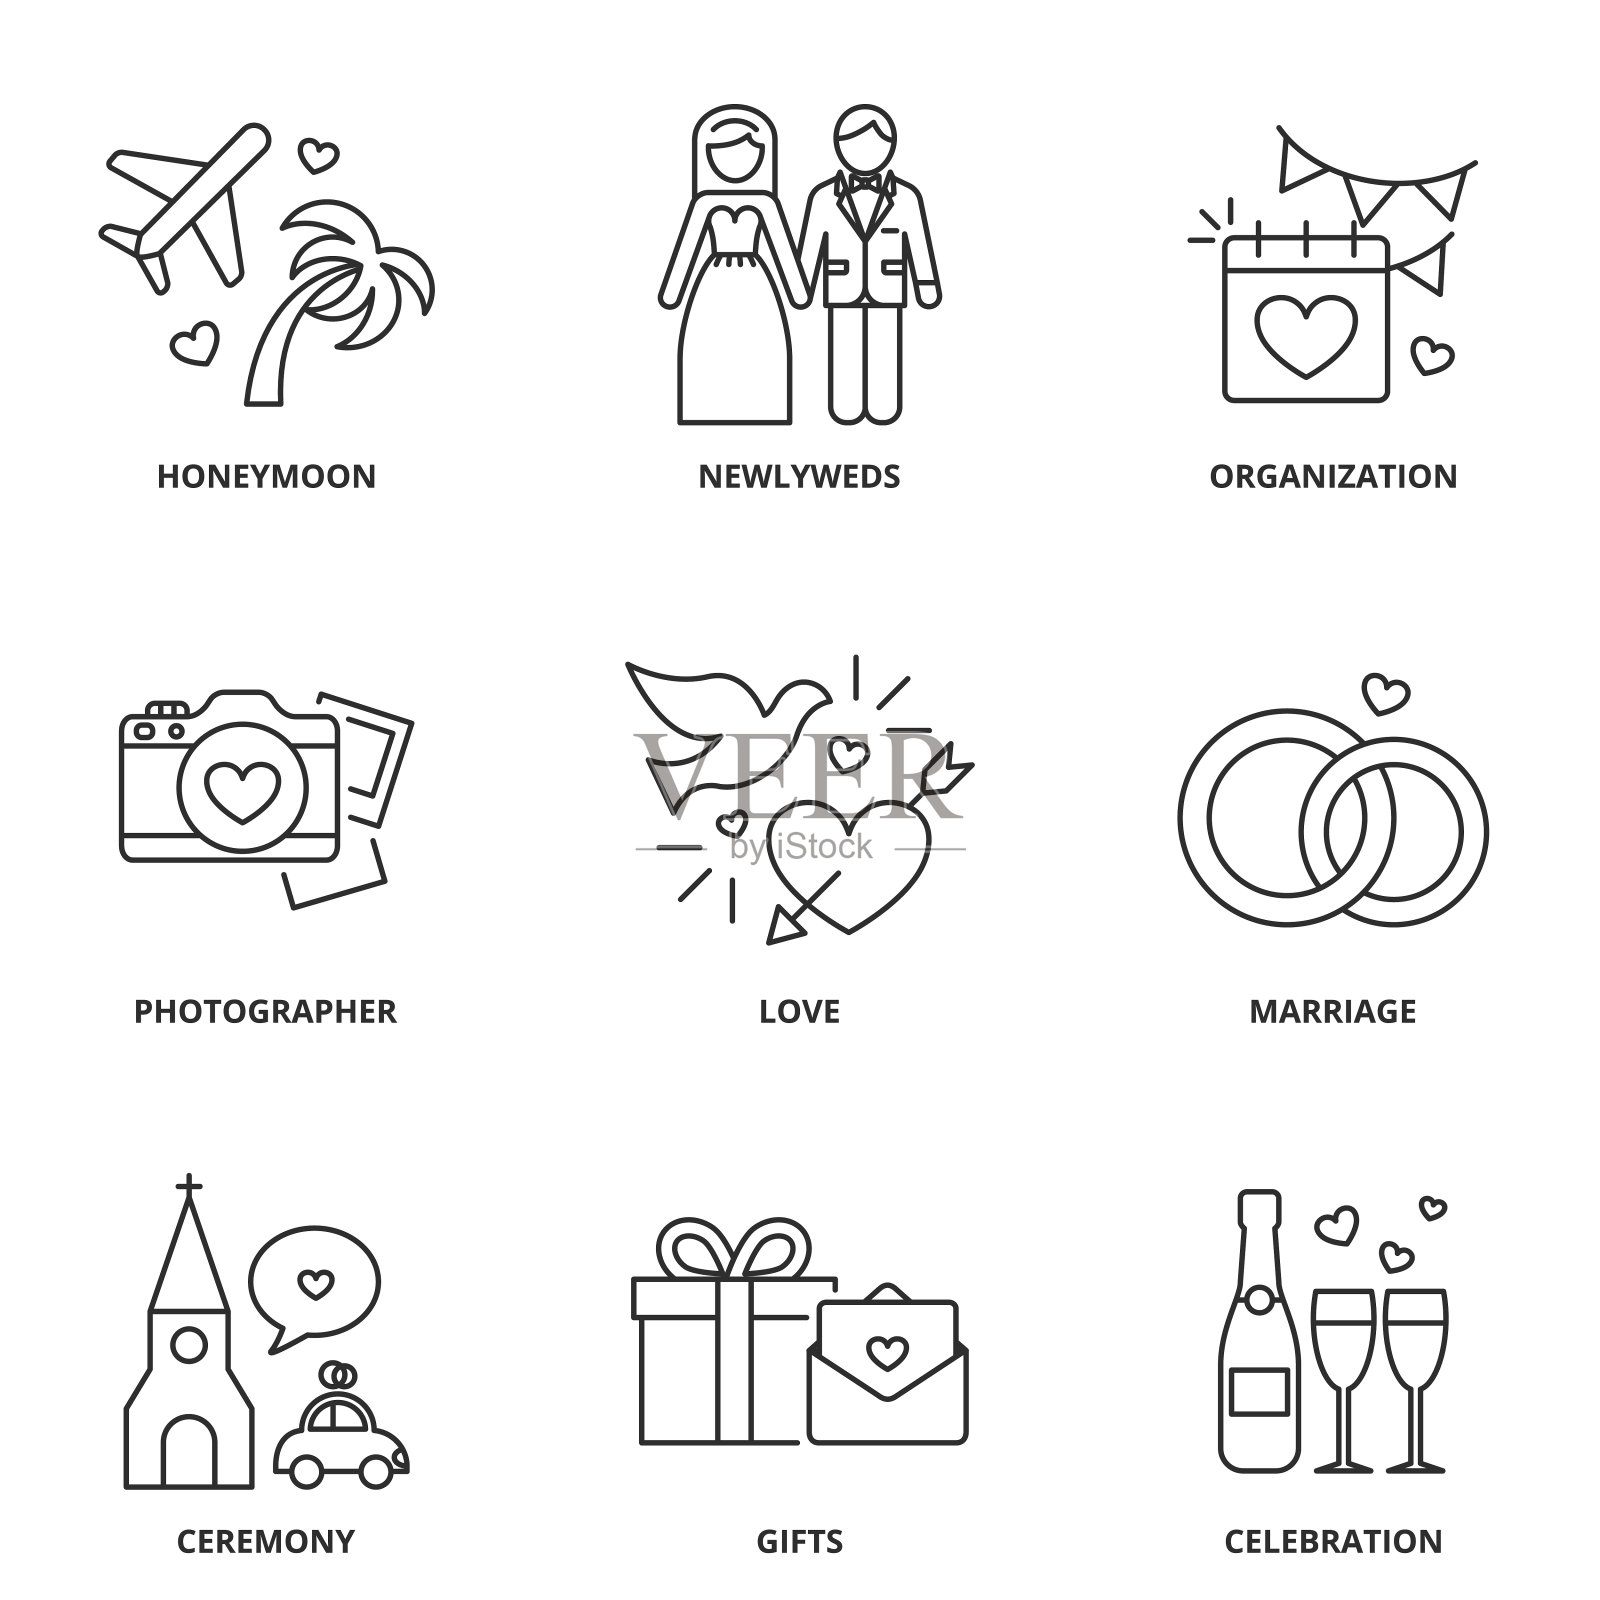 婚礼图标集:蜜月，新婚夫妇，组织，摄影师，爱，结婚，仪式，礼物，庆祝图标素材